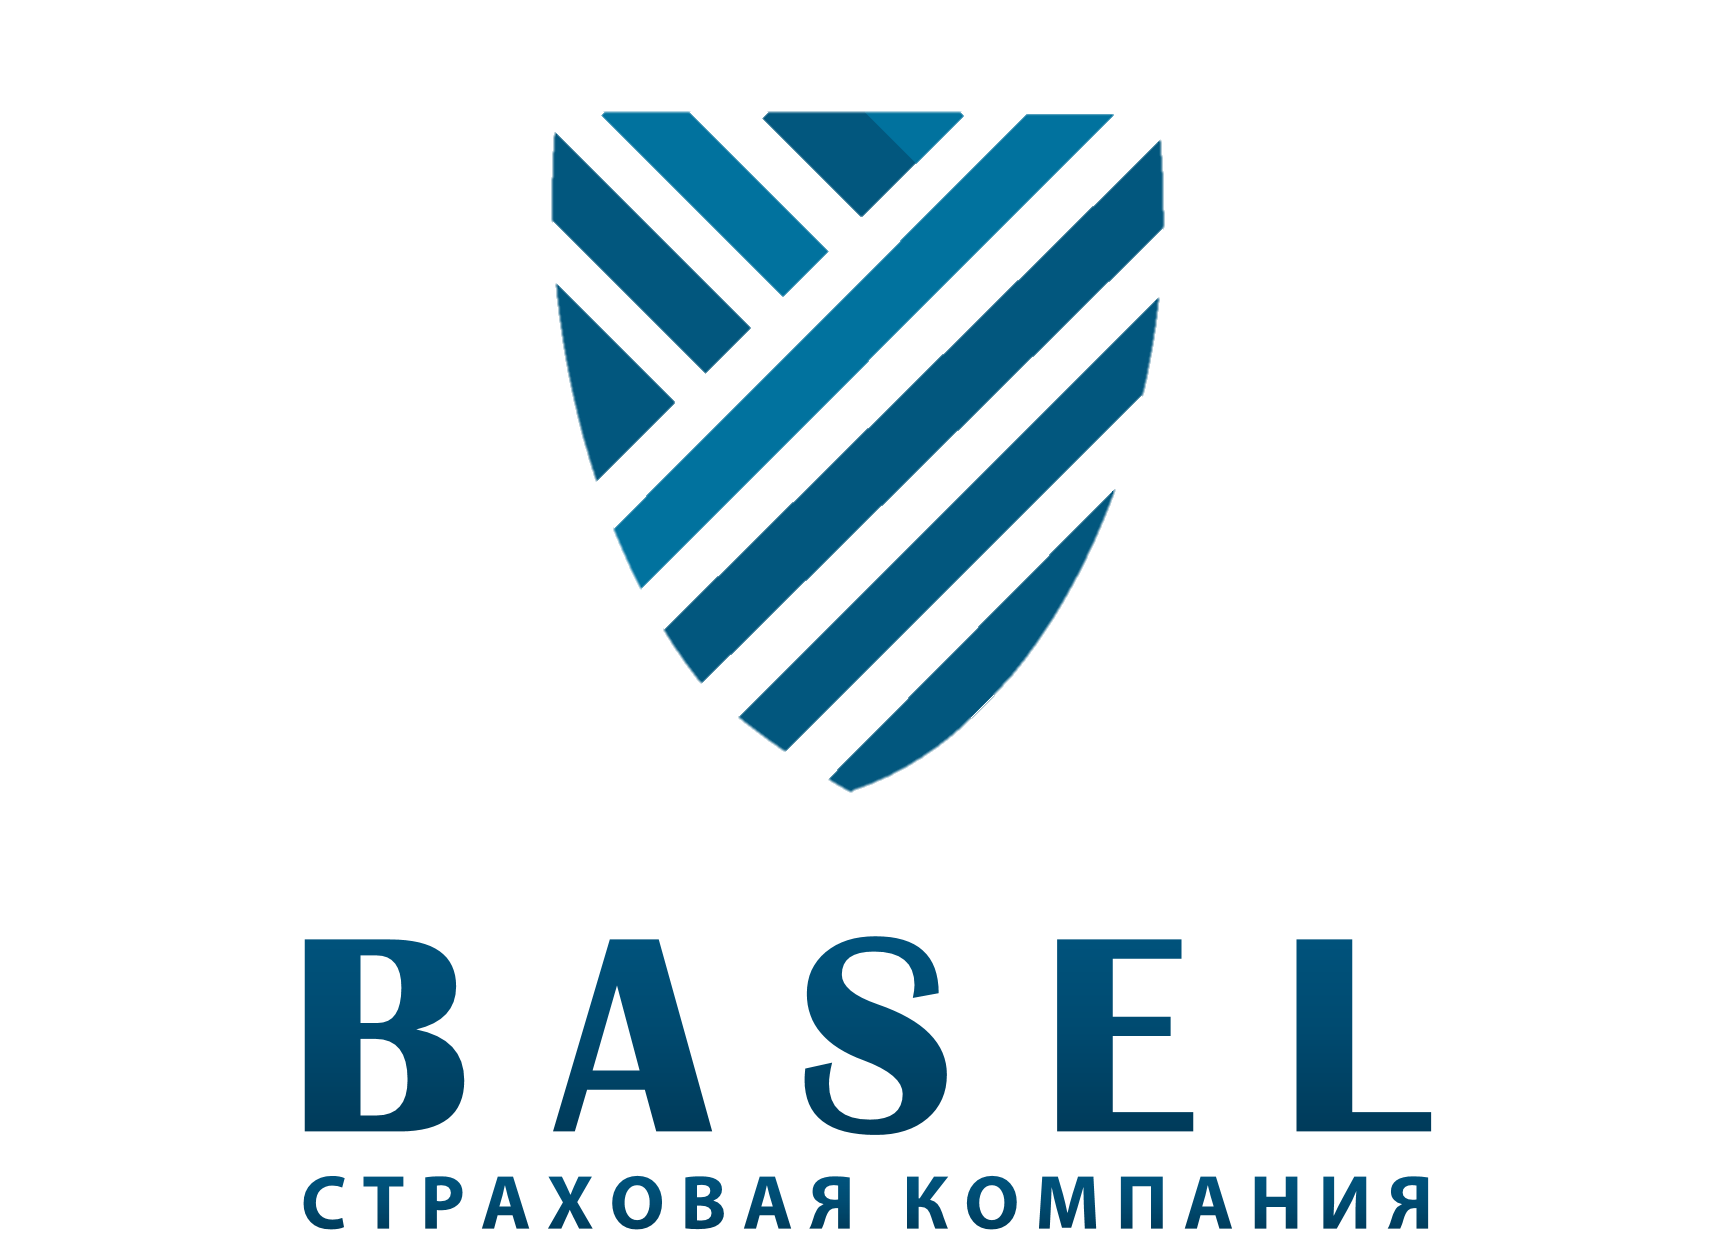 Страховая компания Basel